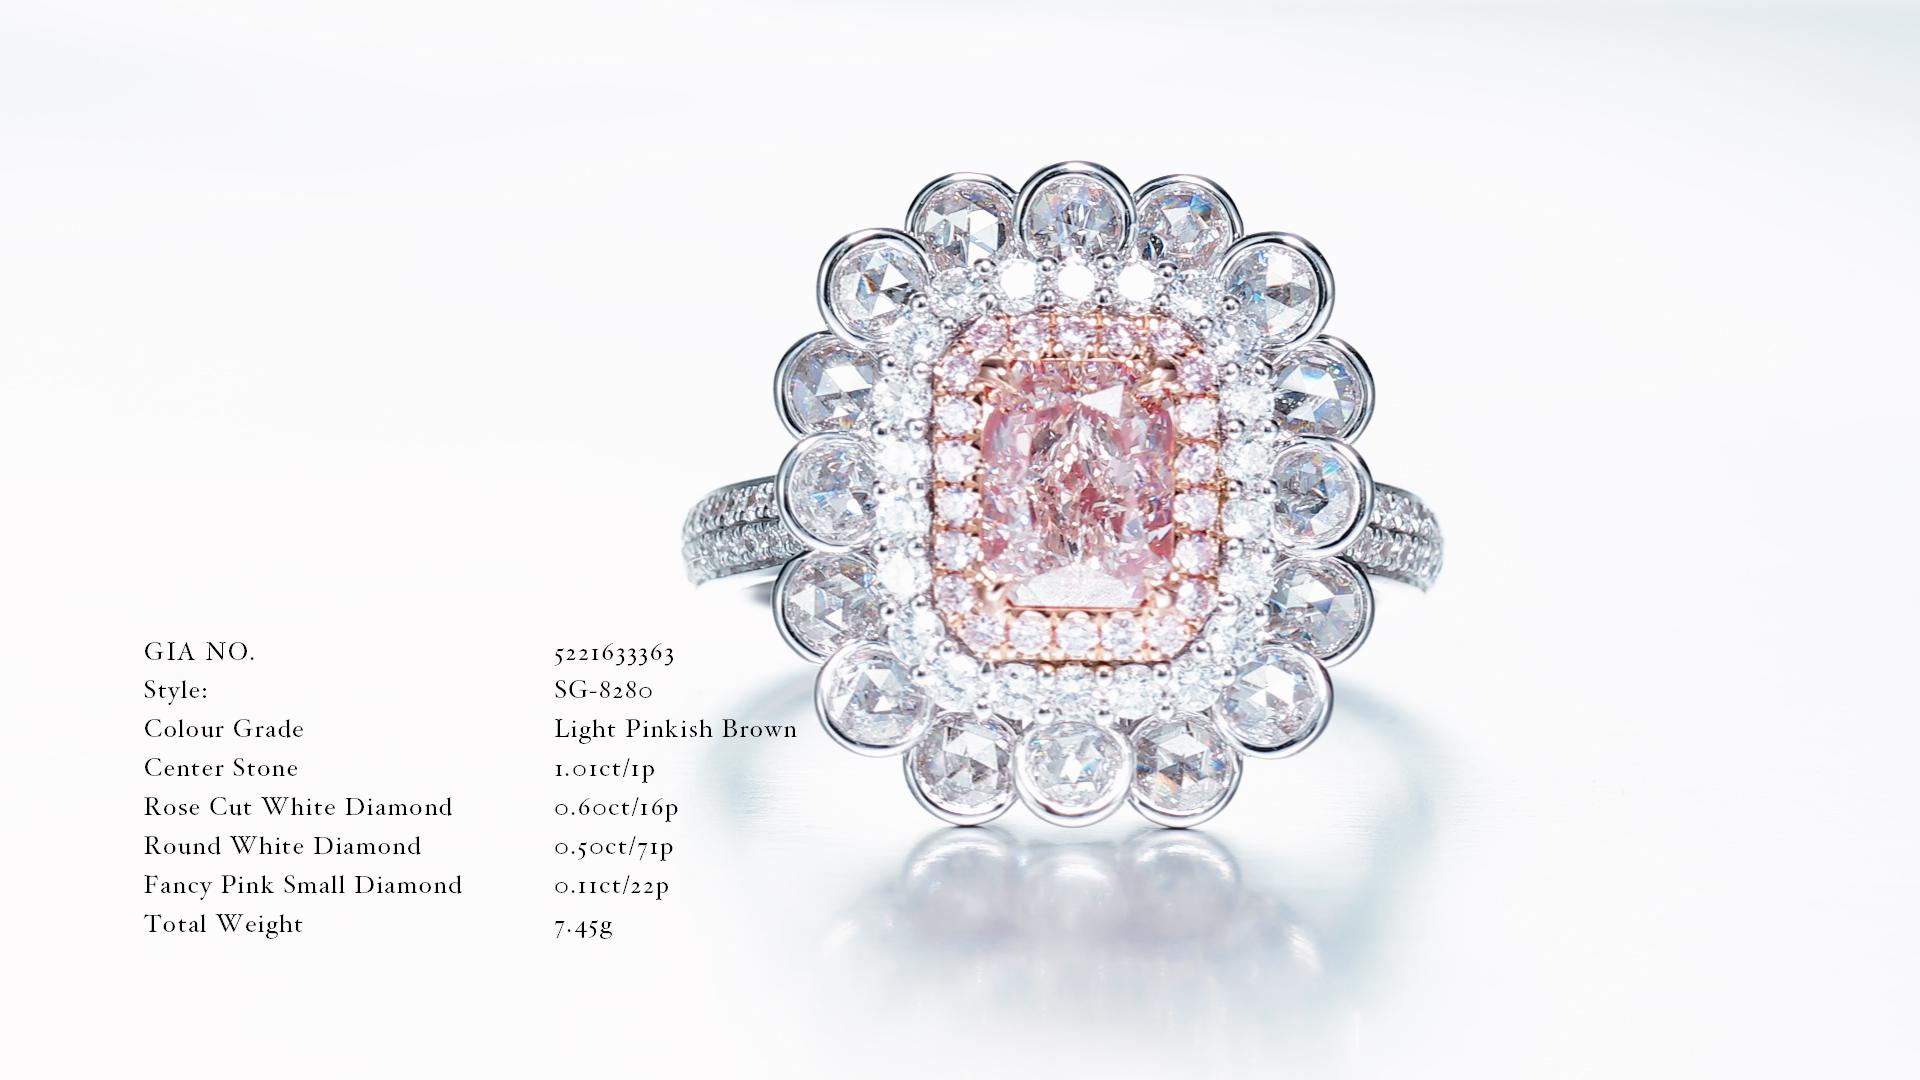  les caractéristiques des bijoux en diamant décrits avec le numéro de certification GIA 5221633363 :

Style : SG-8280

Grade de couleur : Brun rosé clair

Pierre centrale:1.01 ct Radiant 

Poids en carats : 0,60 ct (taille rose)
Diamant blanc taillé